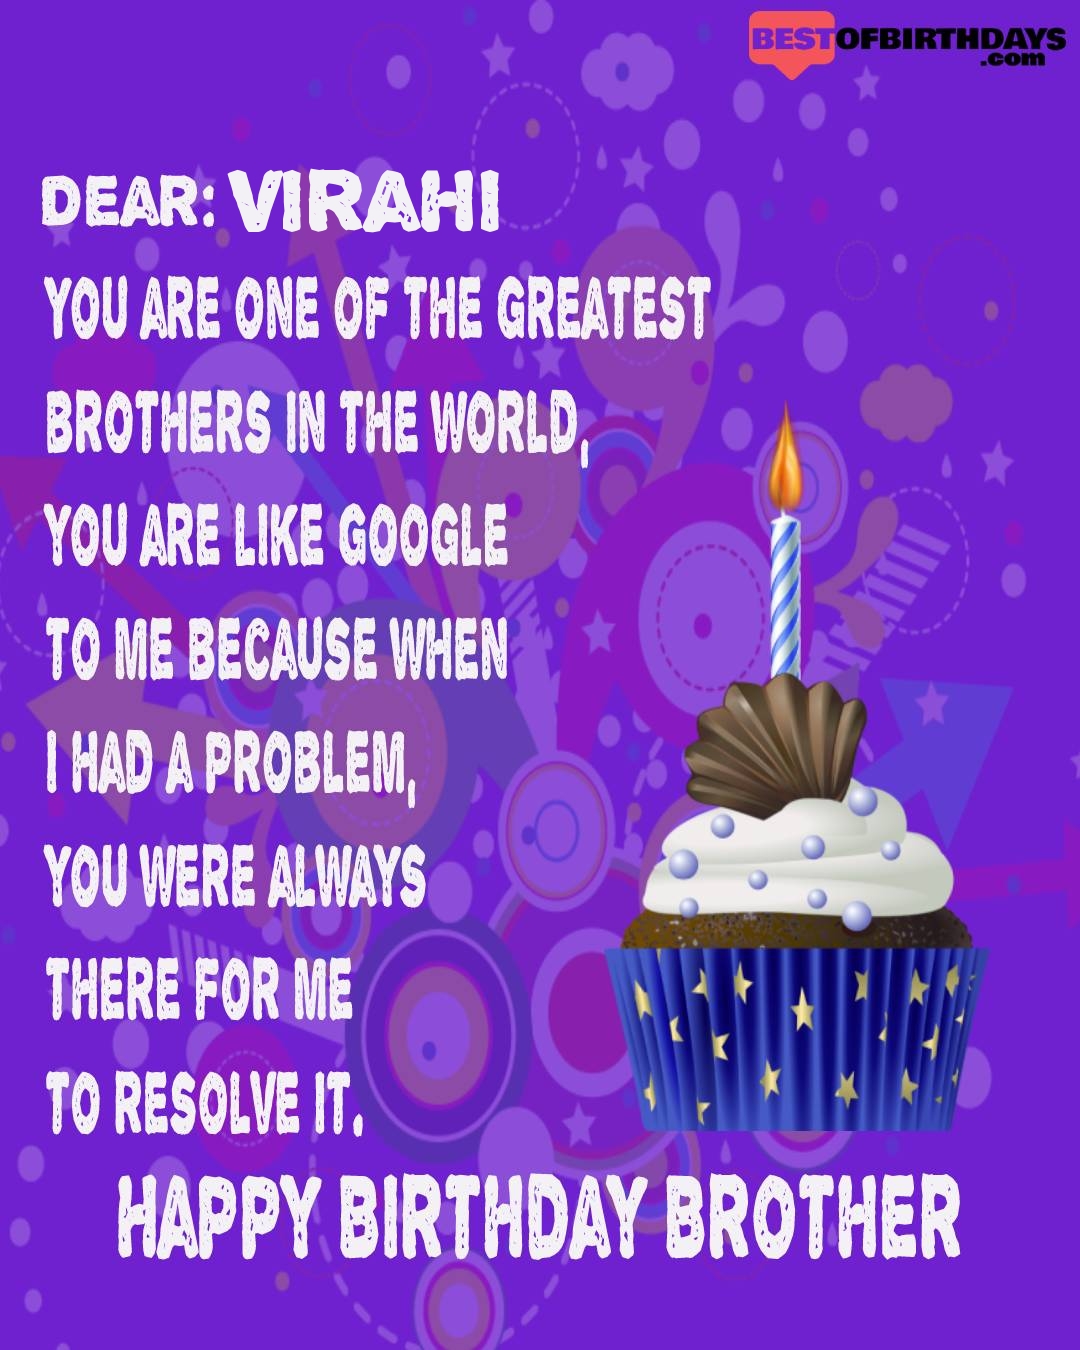 Happy birthday virahi bhai brother bro